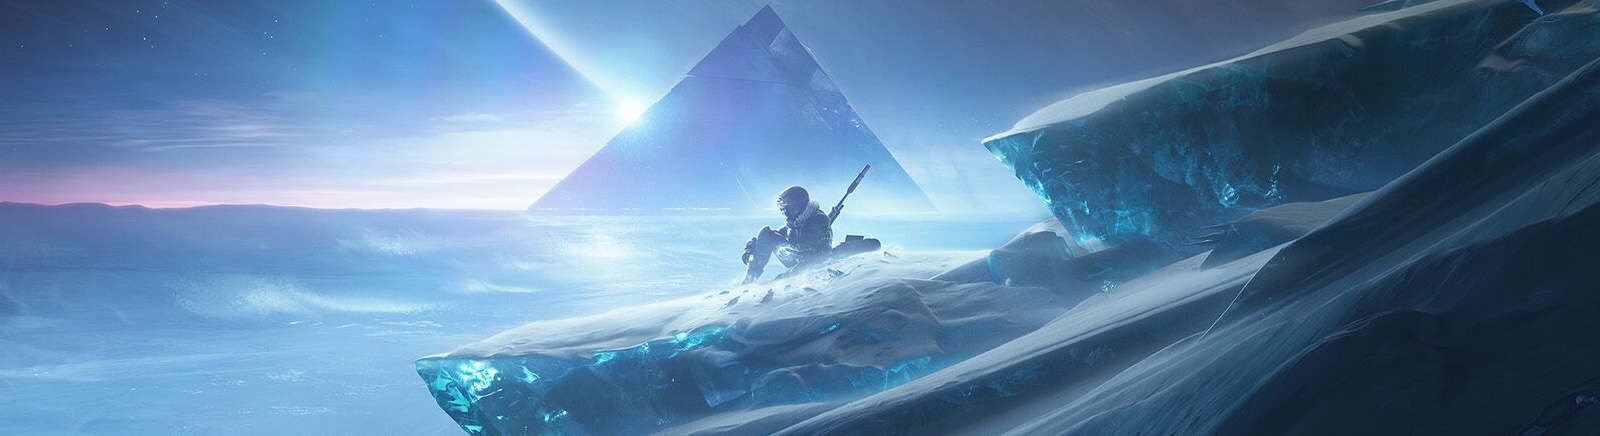 Дата выхода Destiny 2: Beyond Light (Destiny 2: За гранью Света)  на PC, PS5 и Xbox Series X/S в России и во всем мире